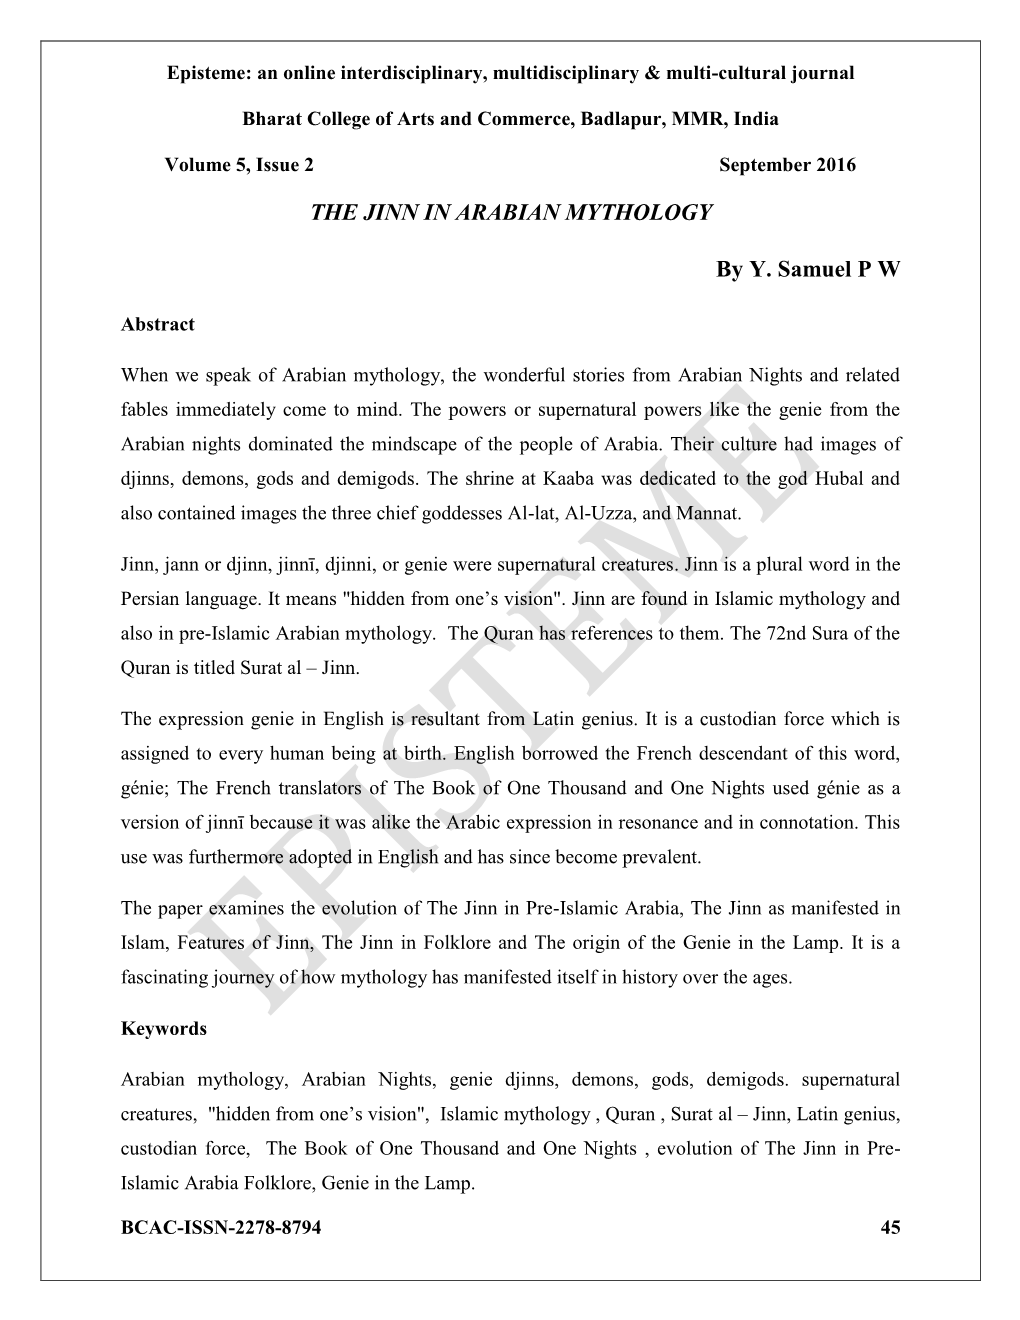 THE JINN in ARABIAN MYTHOLOGY by Y. Samuel